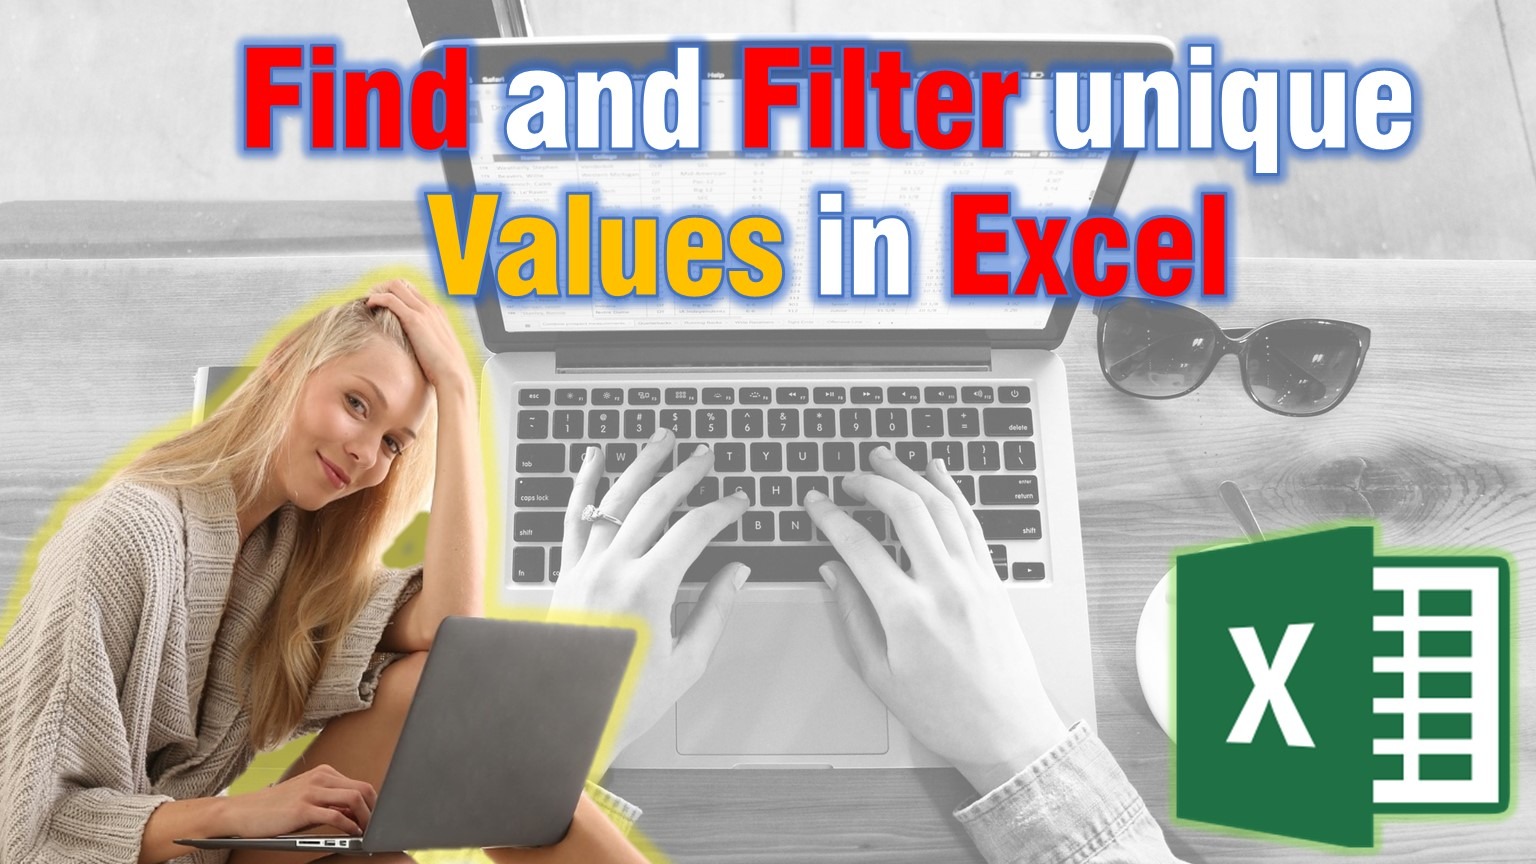 Filter unique values in Excel!